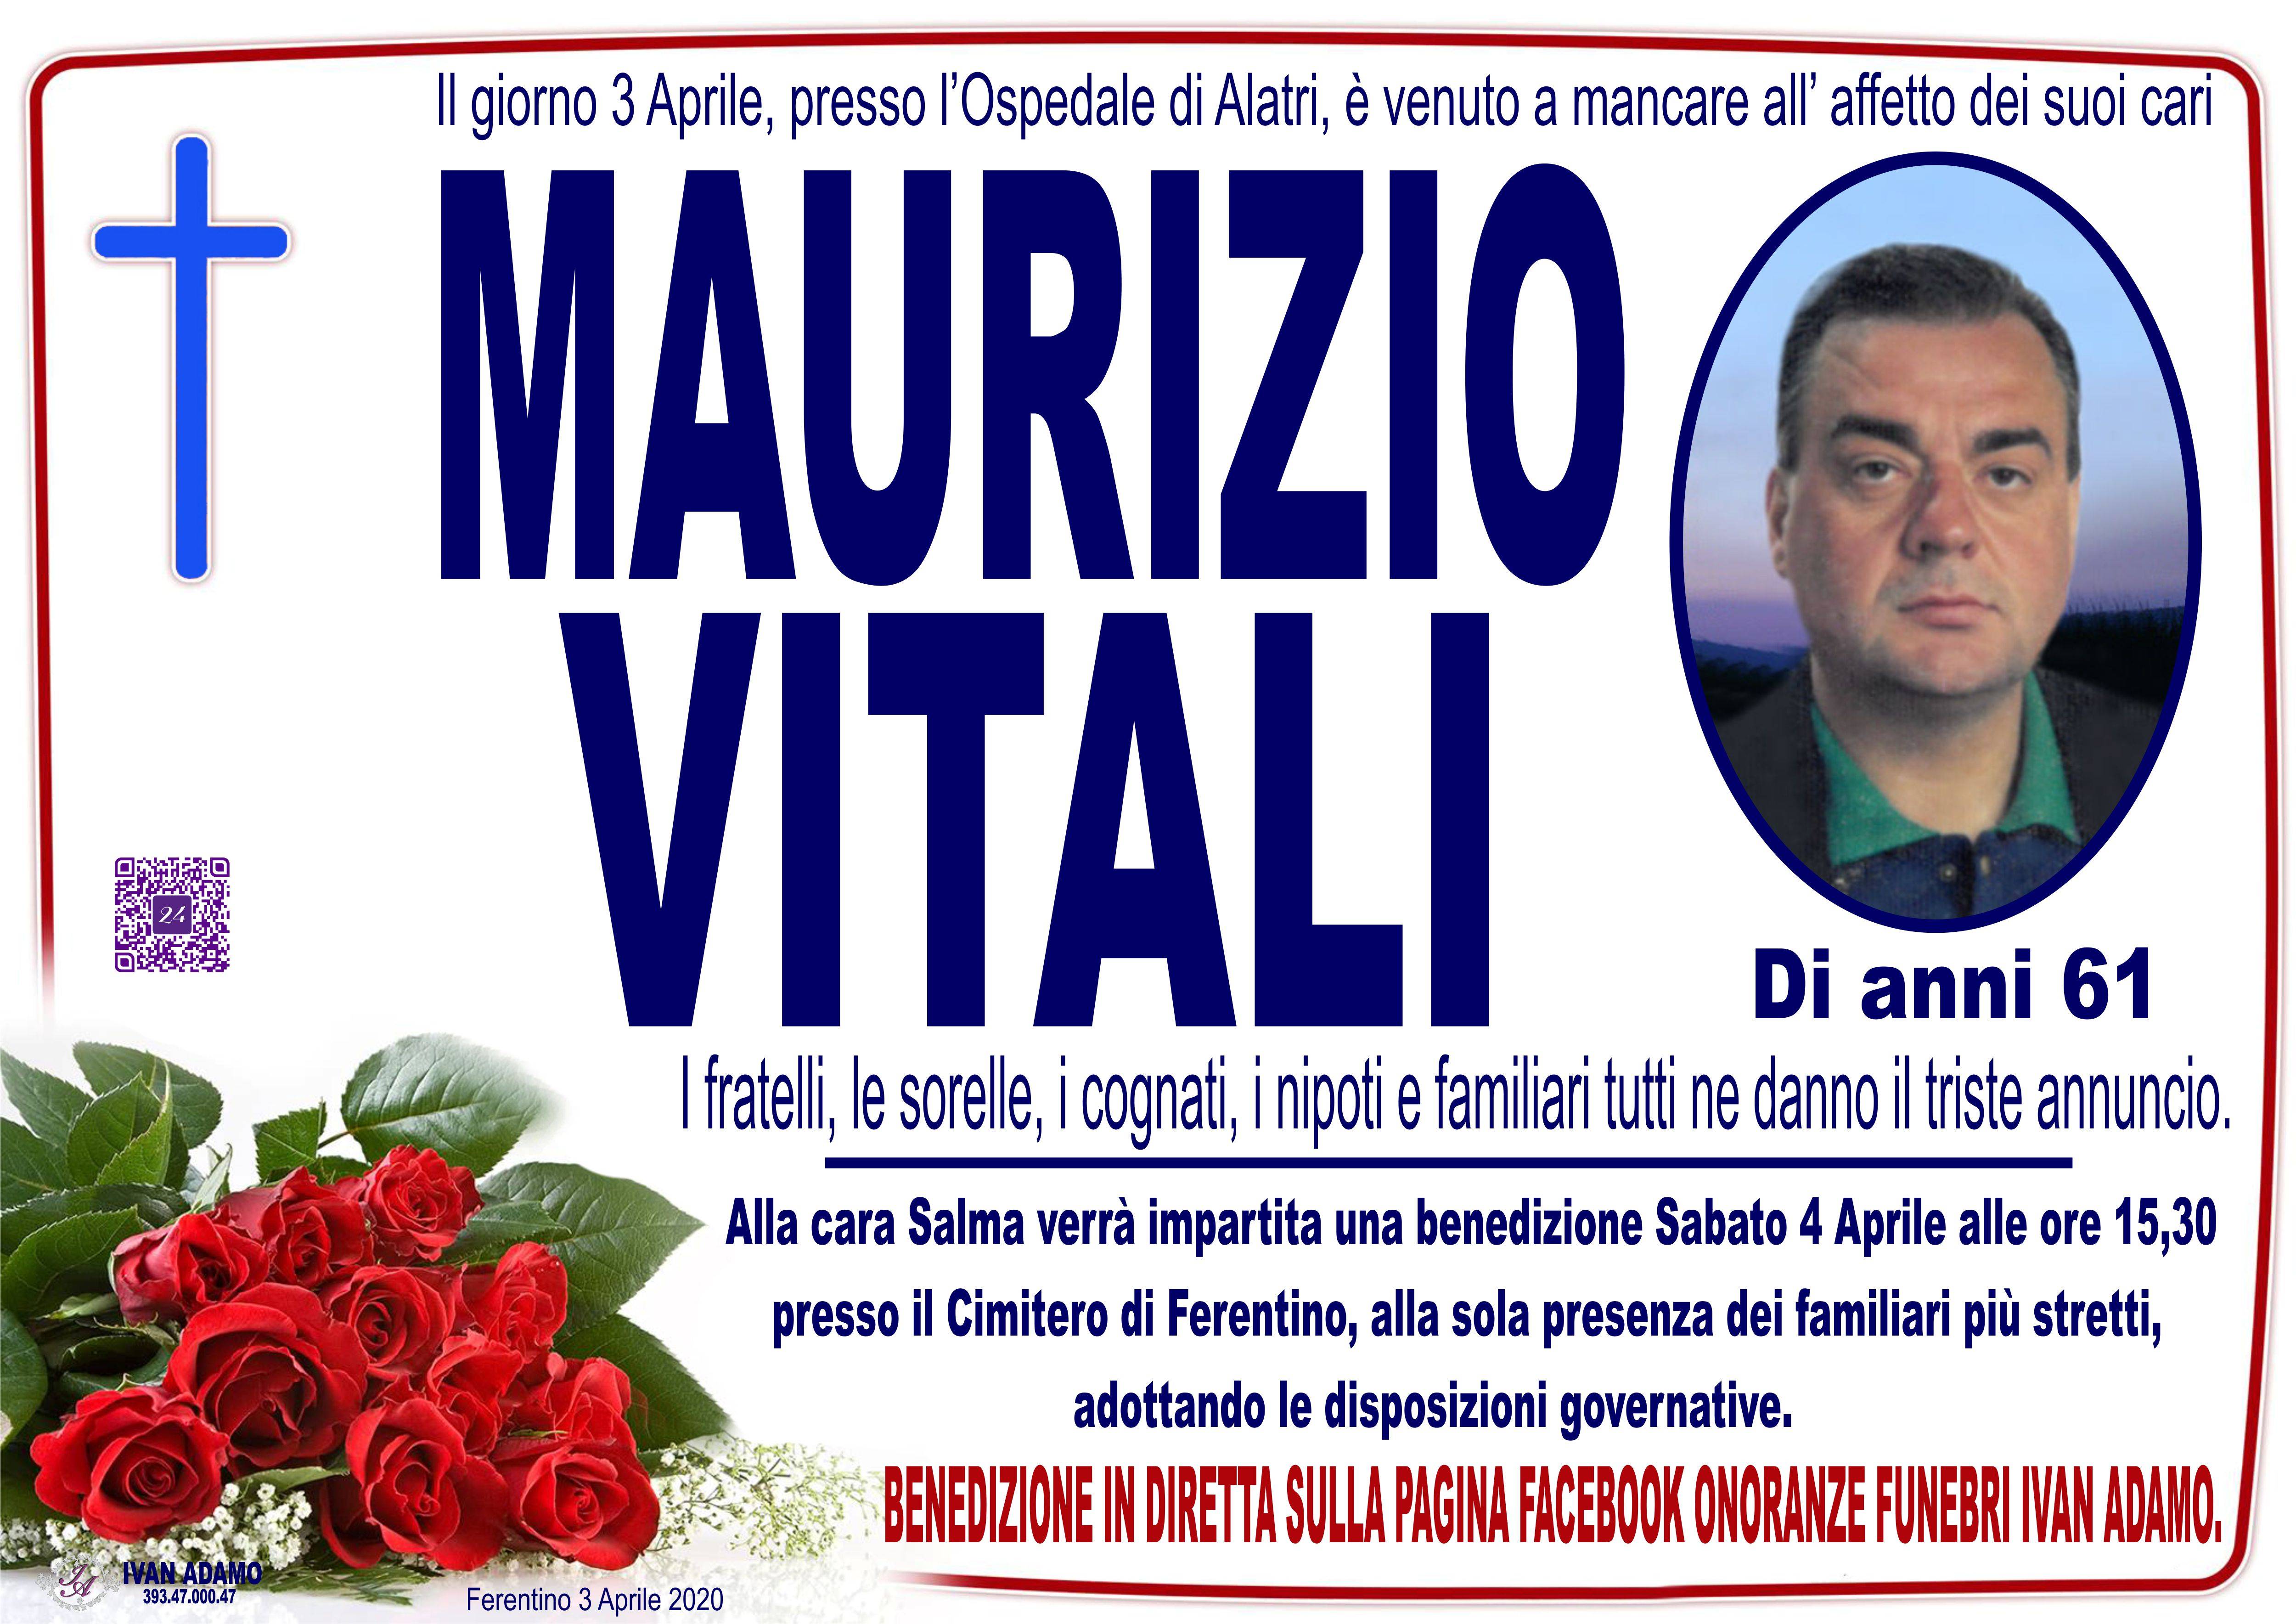 Maurizio Vitali